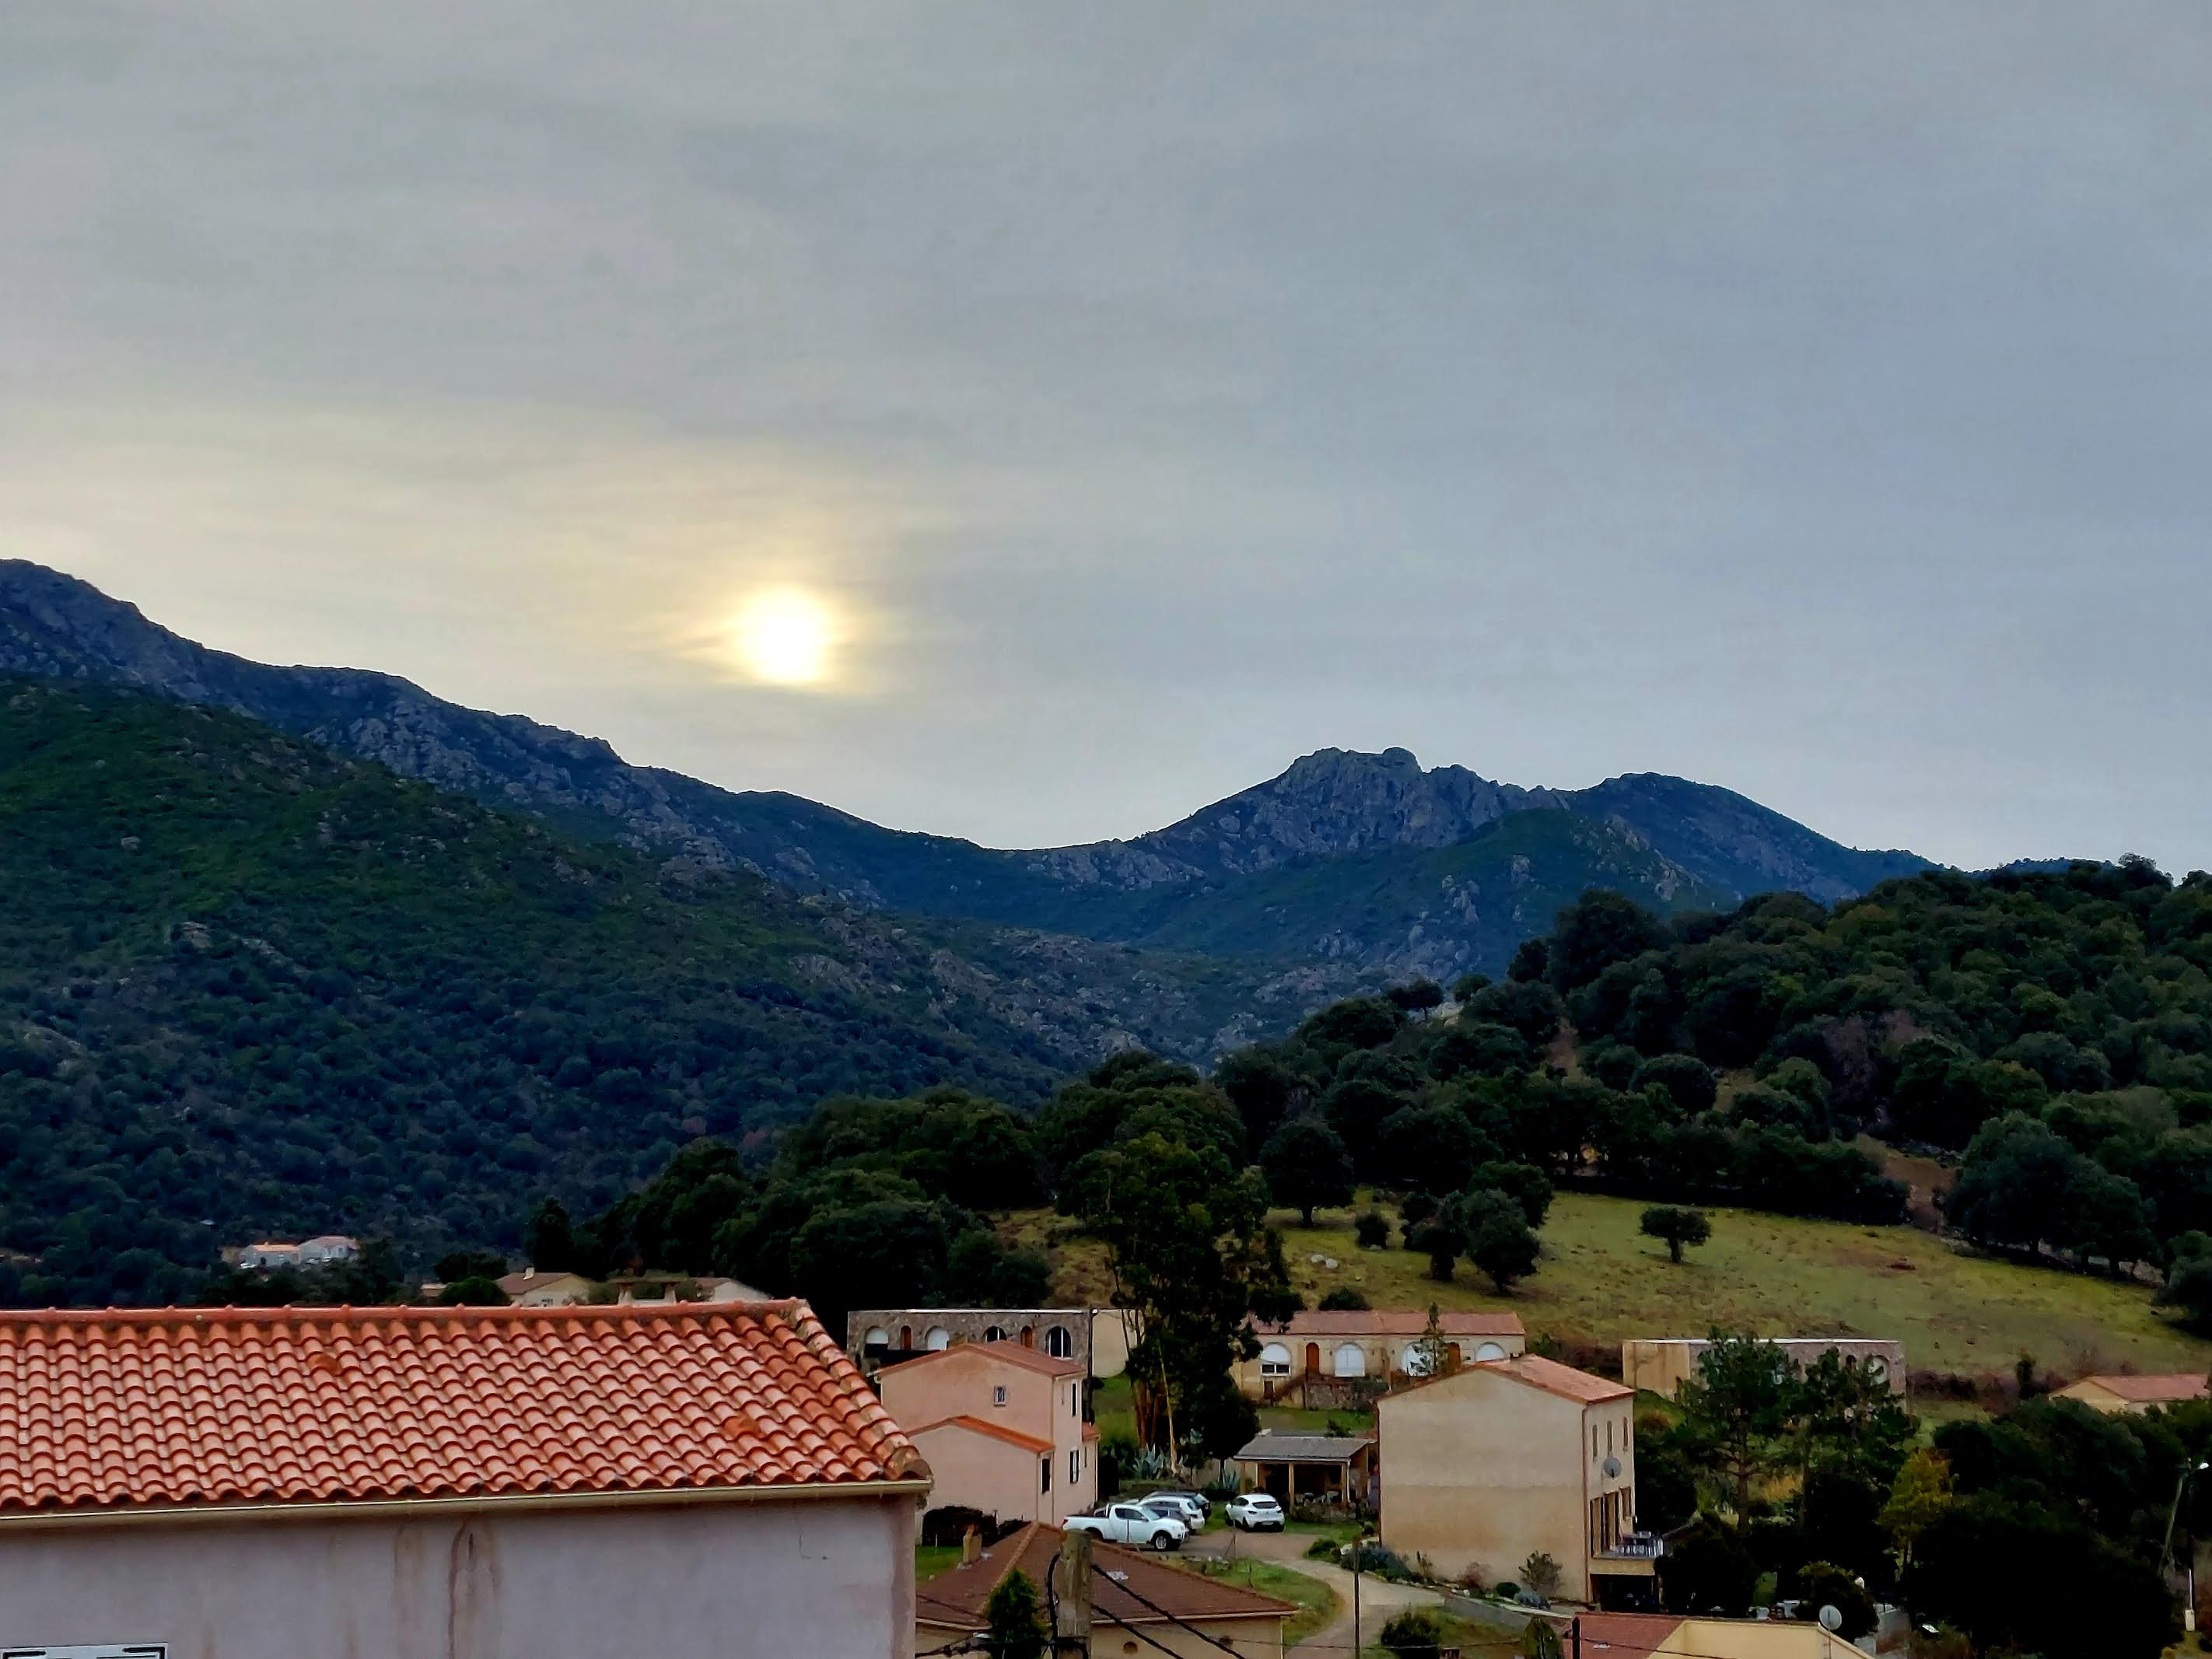 La météo du mercredi 22 juin en Corse